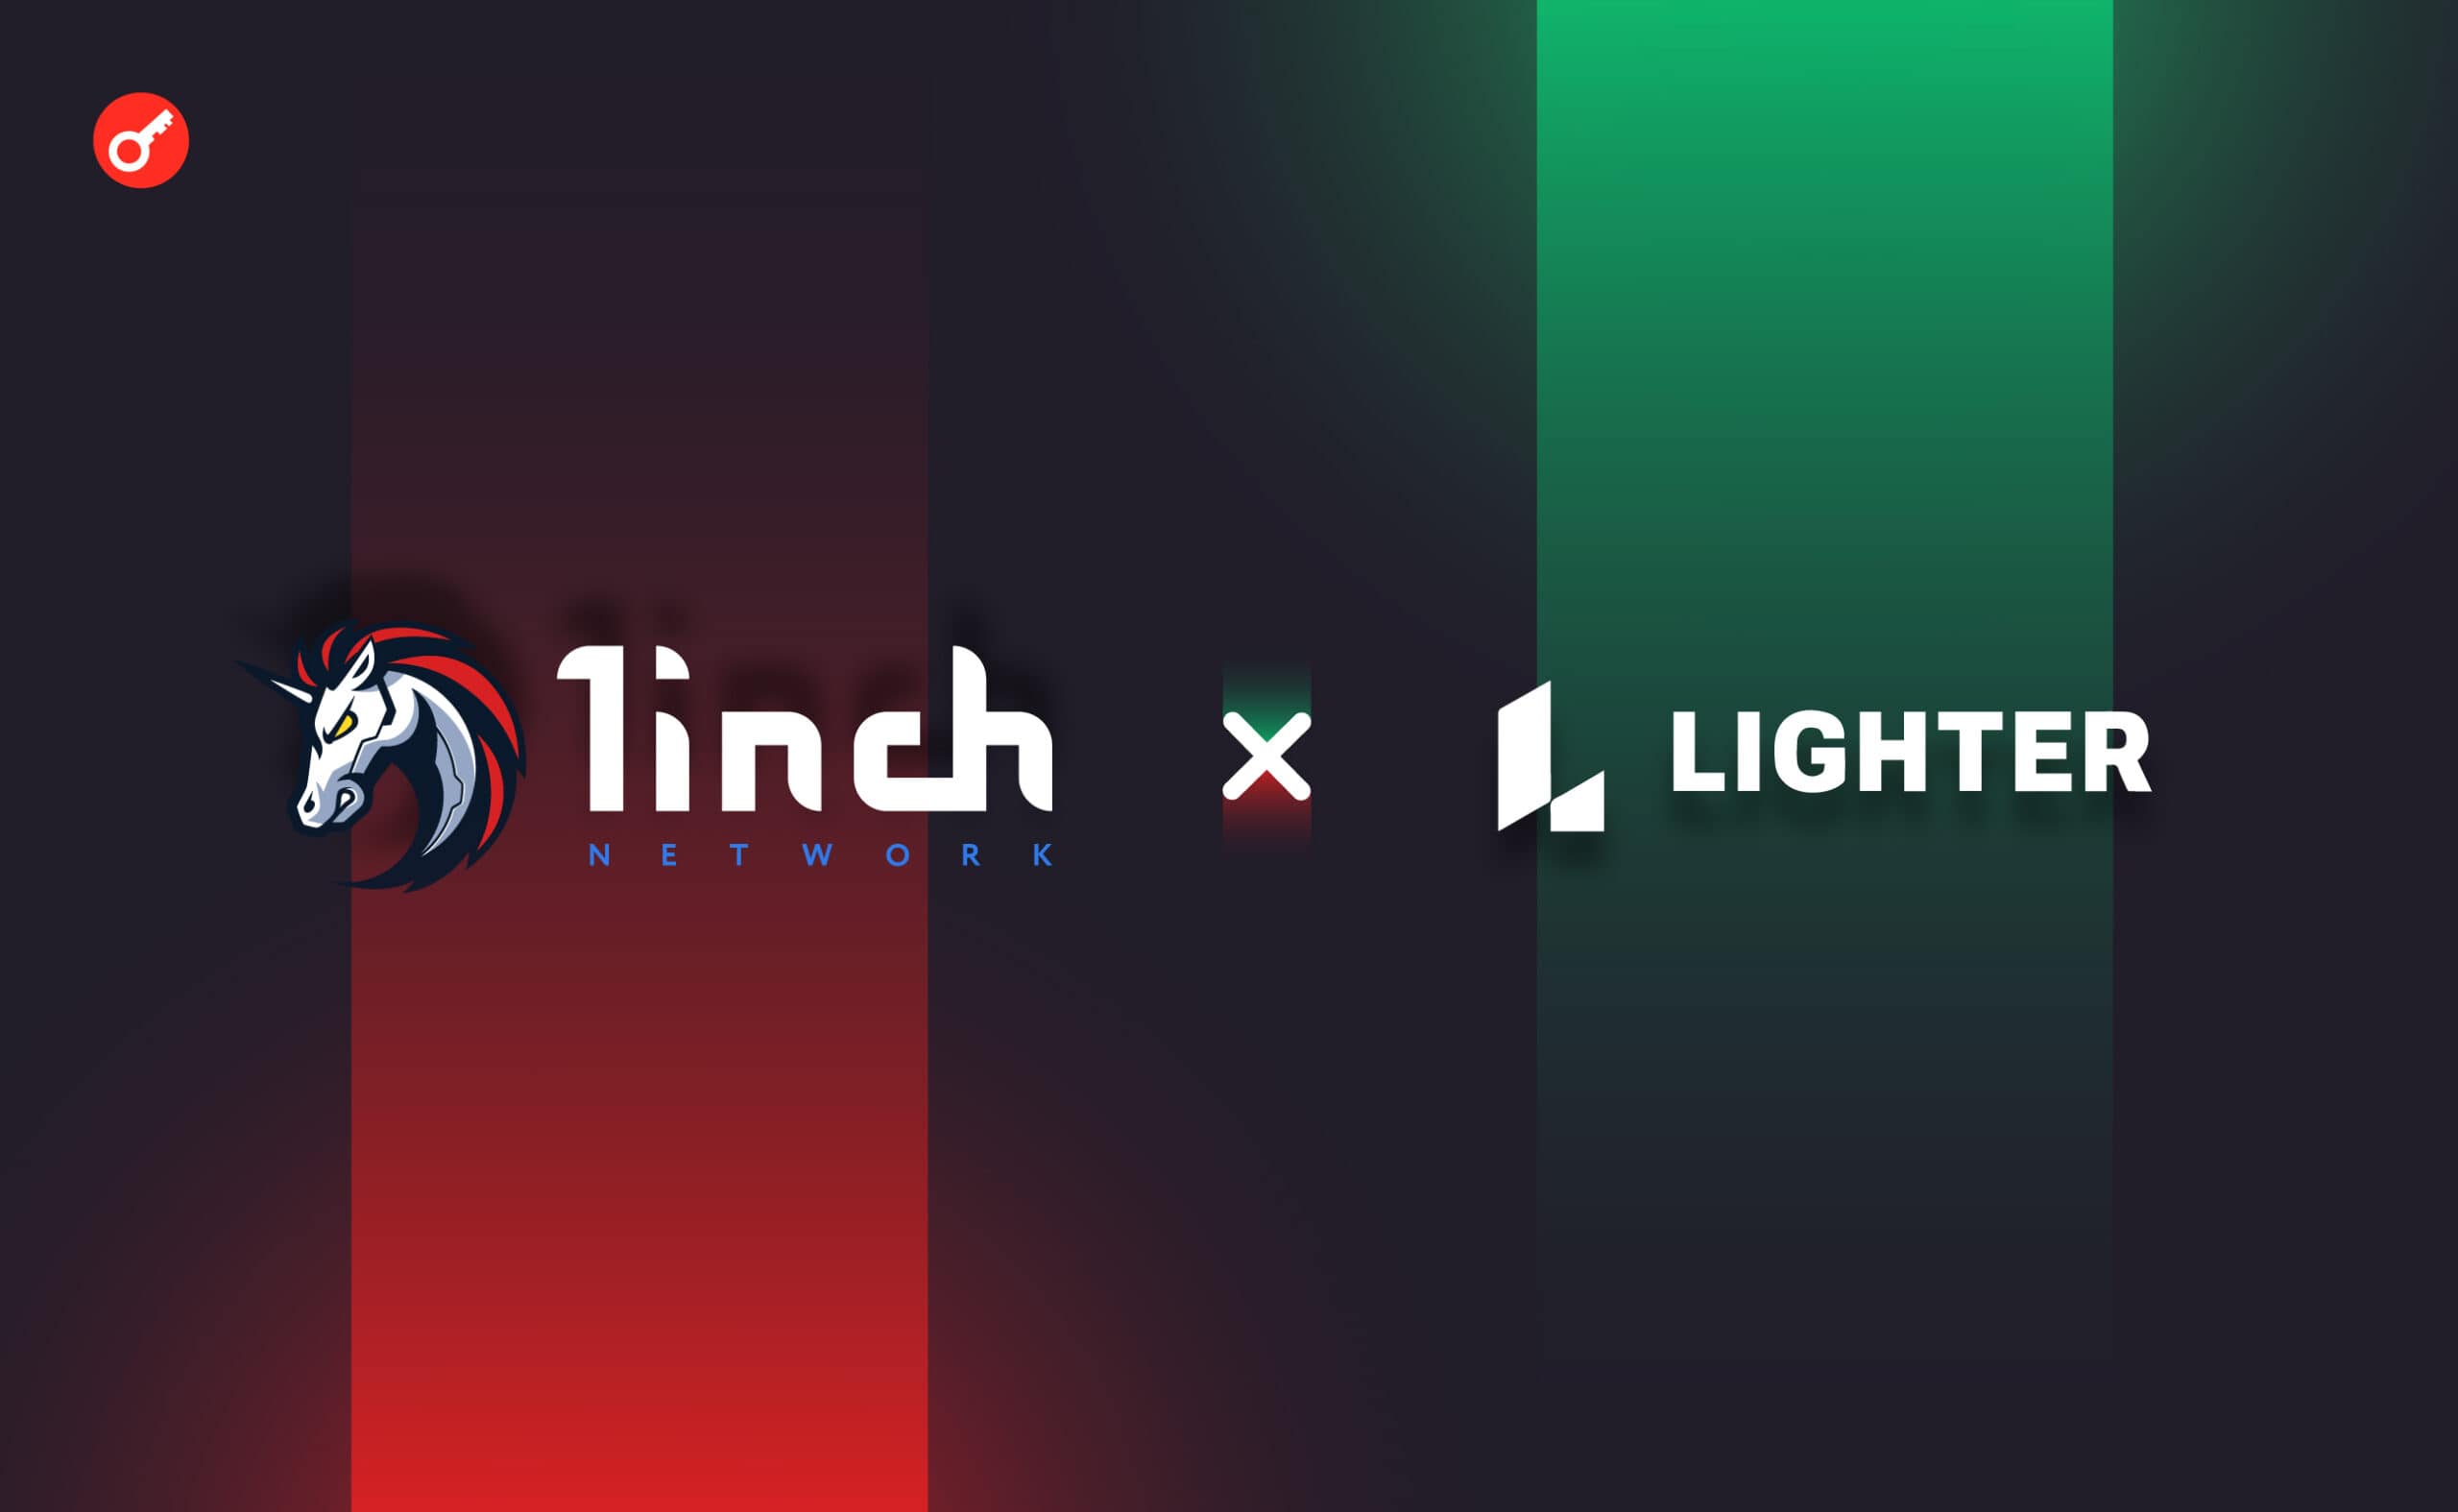 1inch Network оголосили про партнерство з Lighter.xyz. Головний колаж новини.